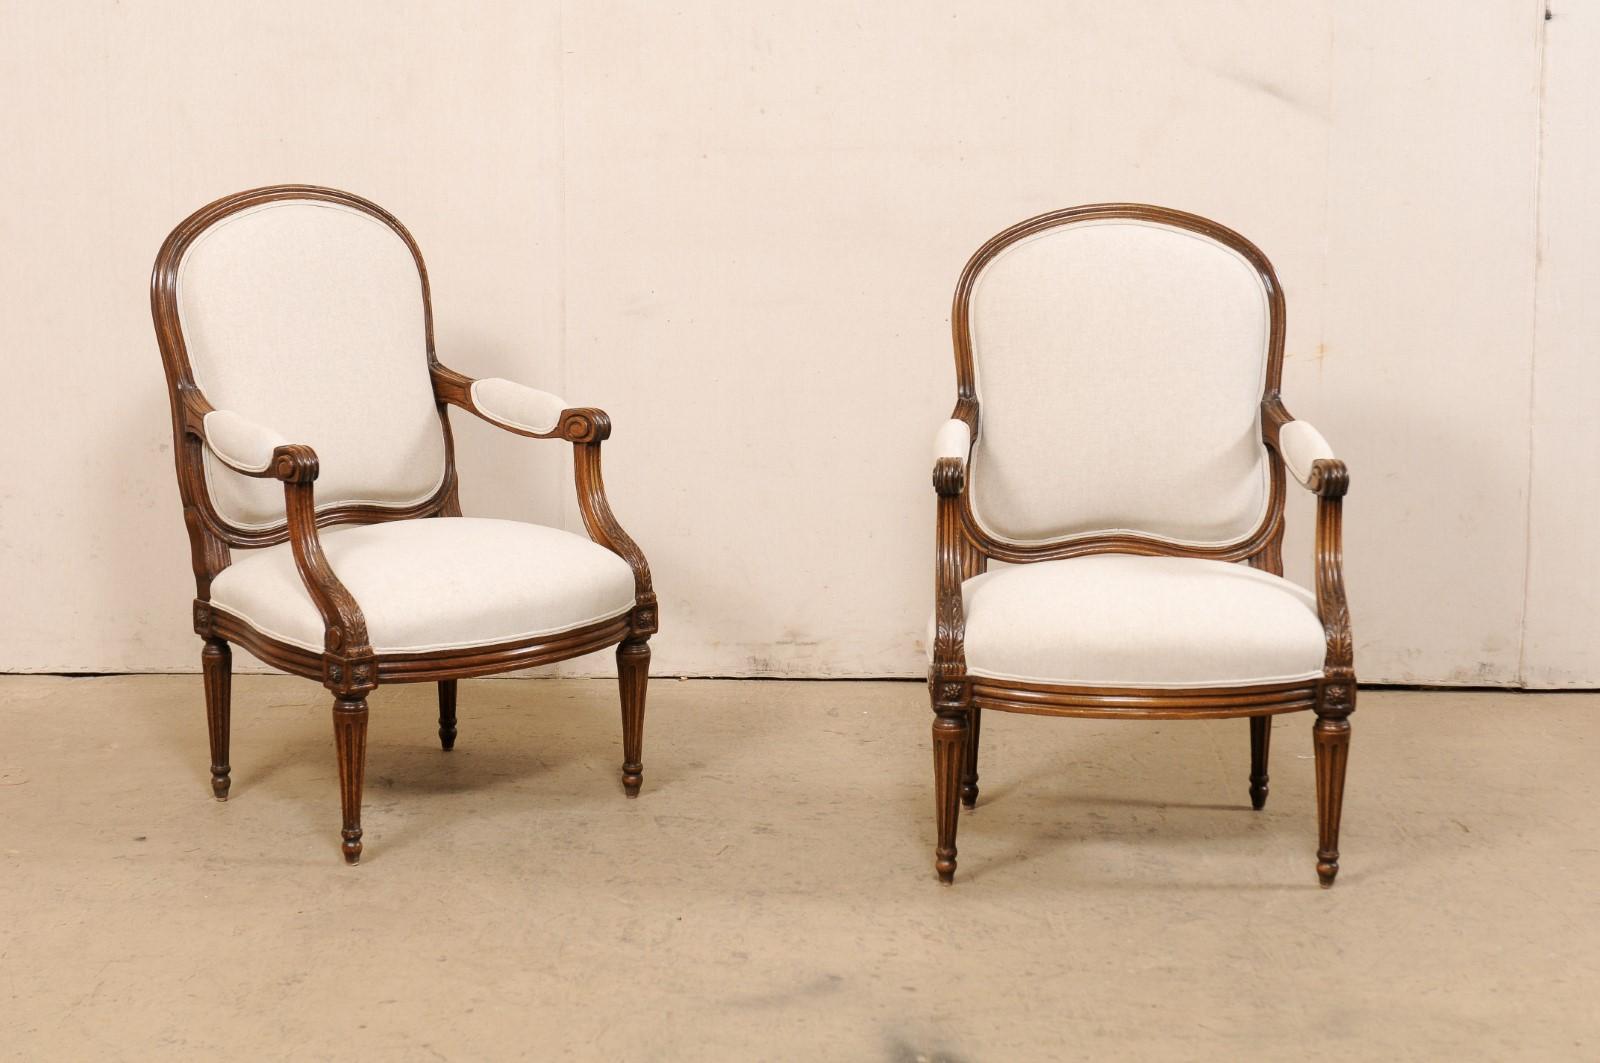 Paire française de fauteuils de style Louis XVI, intemporels et élégants, datant du 19e siècle. Cette paire de chaises anciennes d'origine française est dotée d'un dossier rembourré aux formes harmonieuses et d'un élégant arceau de crête, le tout